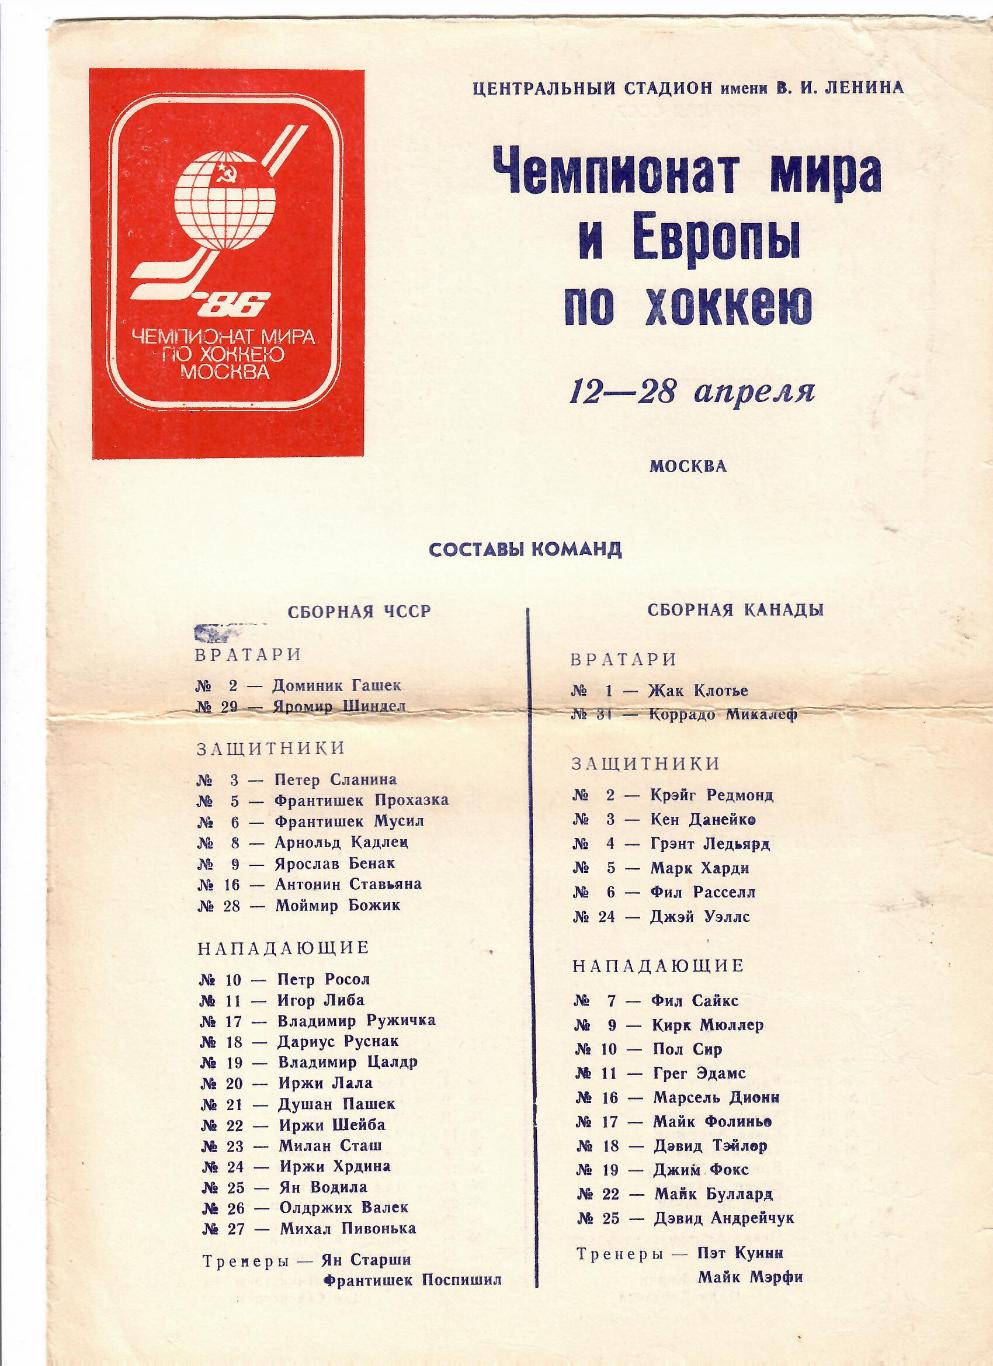 Чемпионат мира и Европы по хоккею Москва 1986 Составы команд